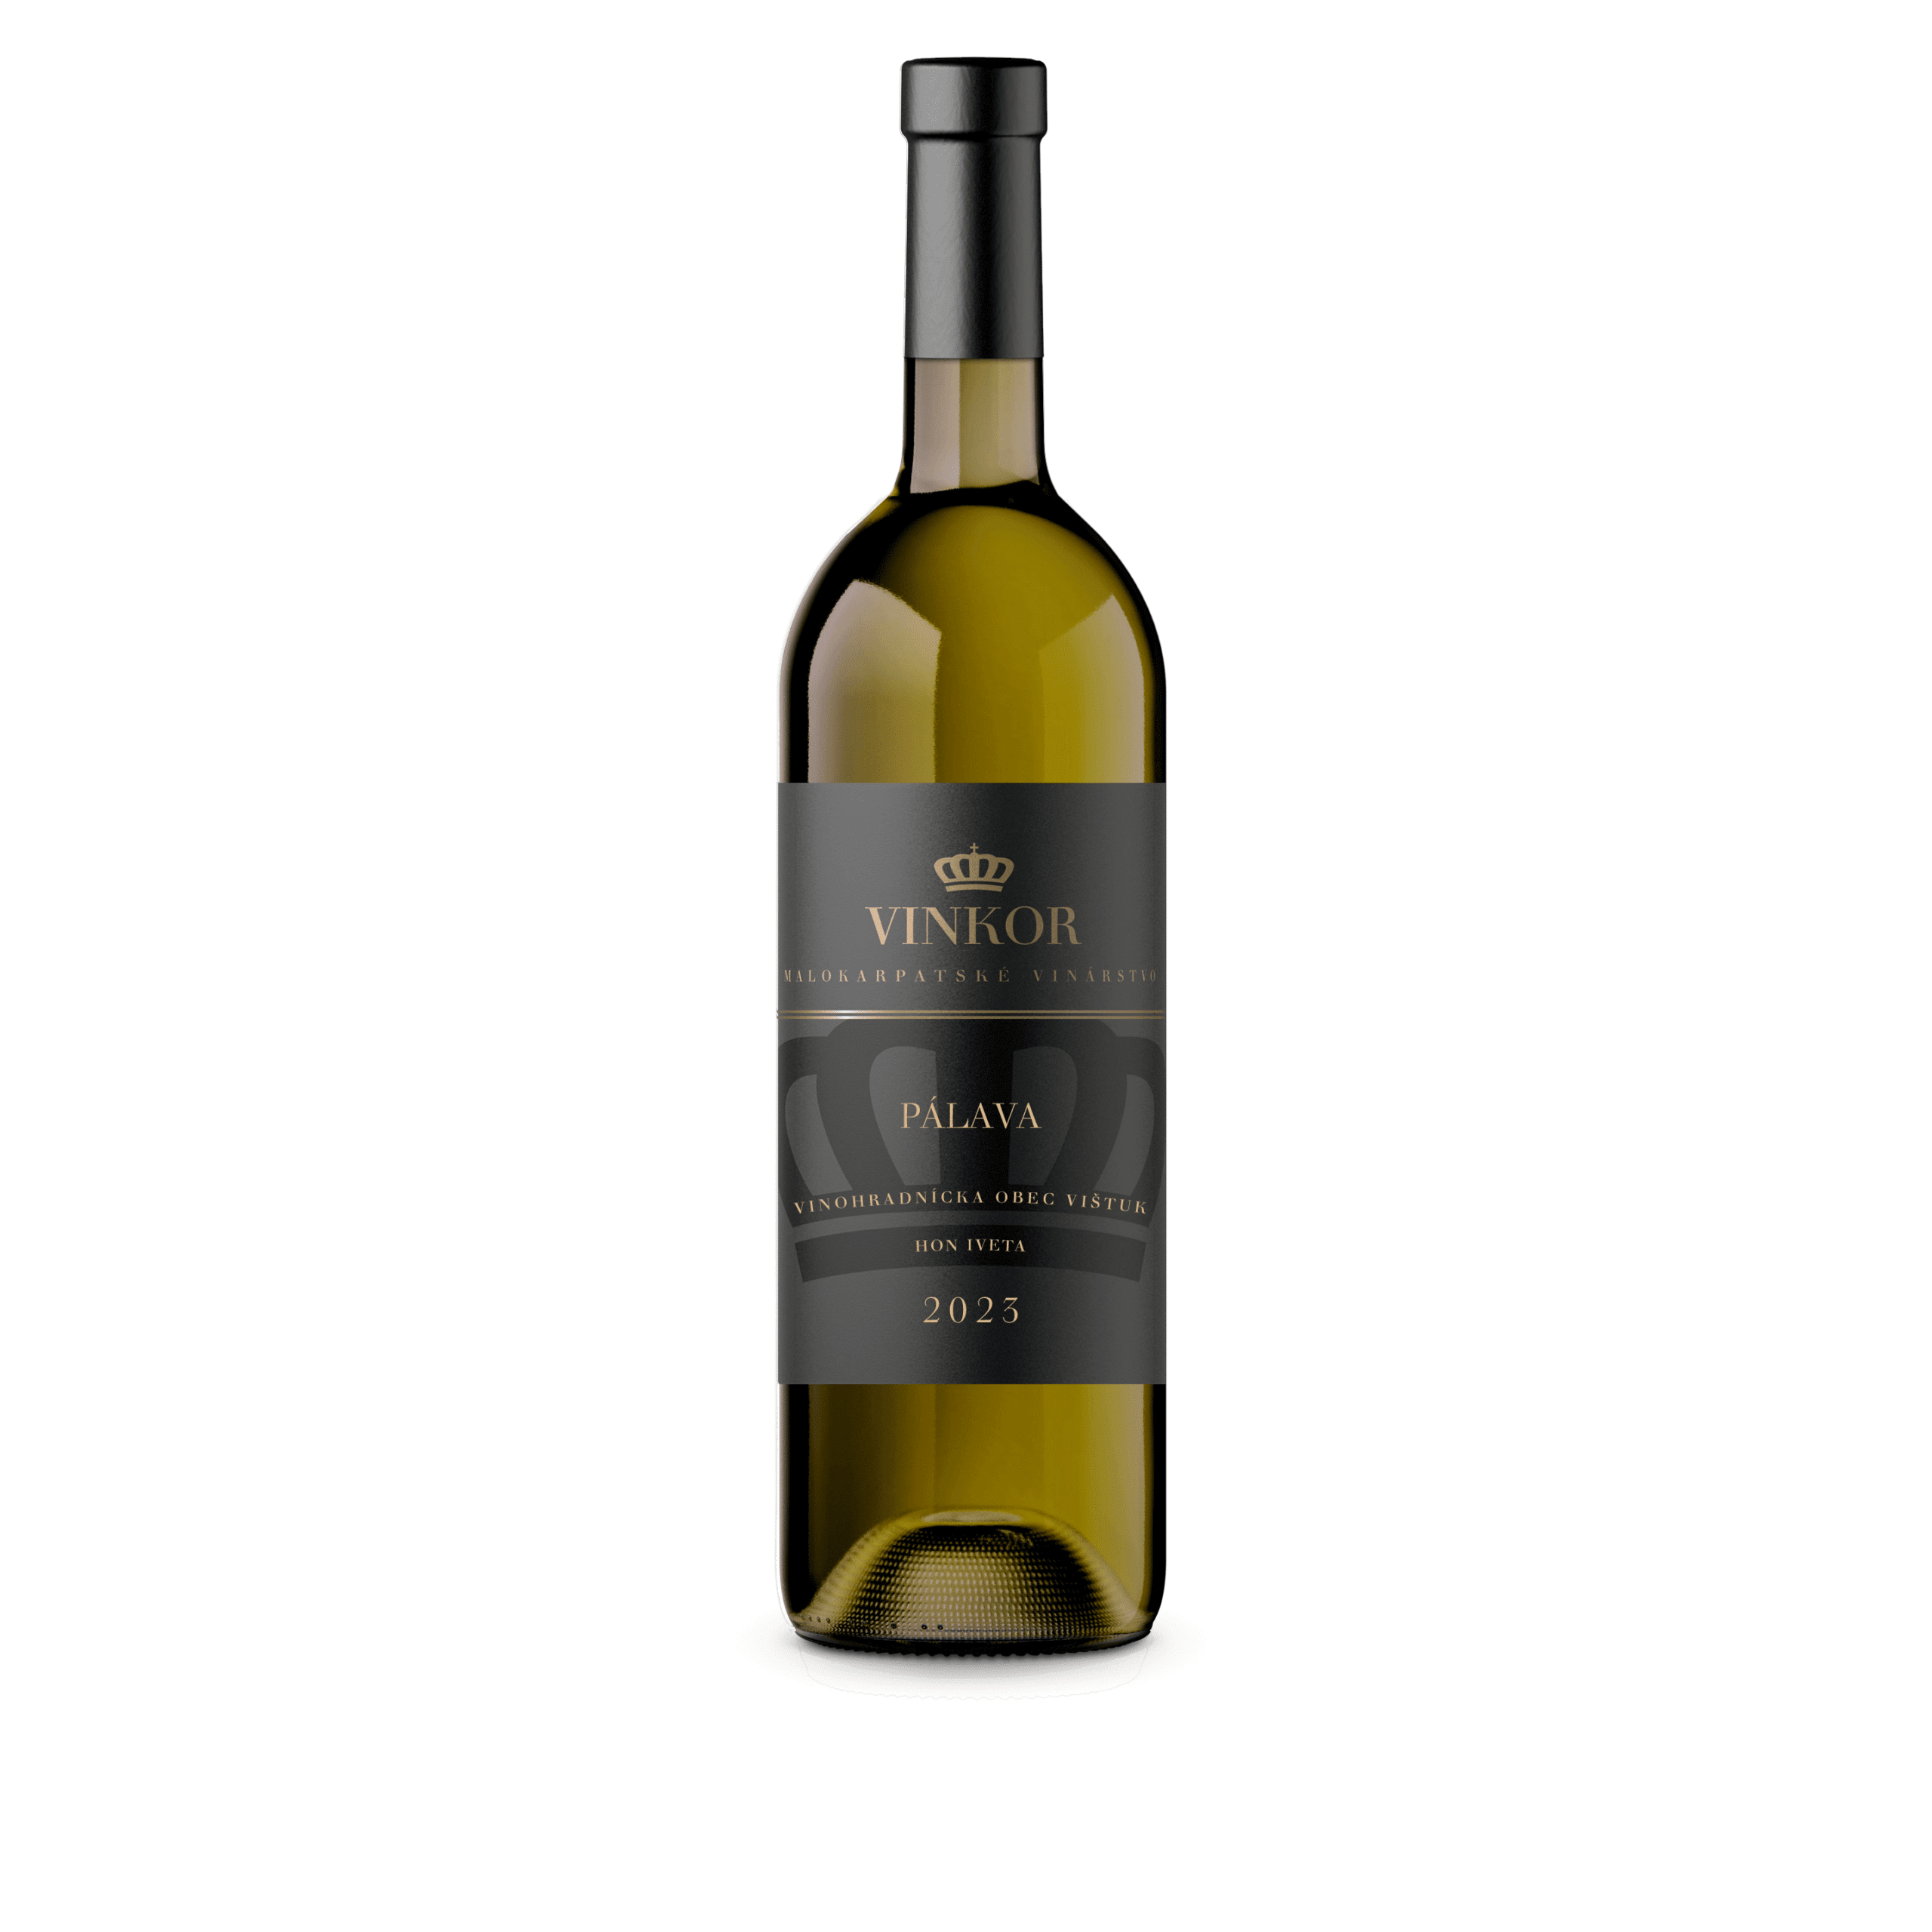 Biele suché víno Pálava 2023 z rodinného vinárstva Vinkor z Malých Karpát